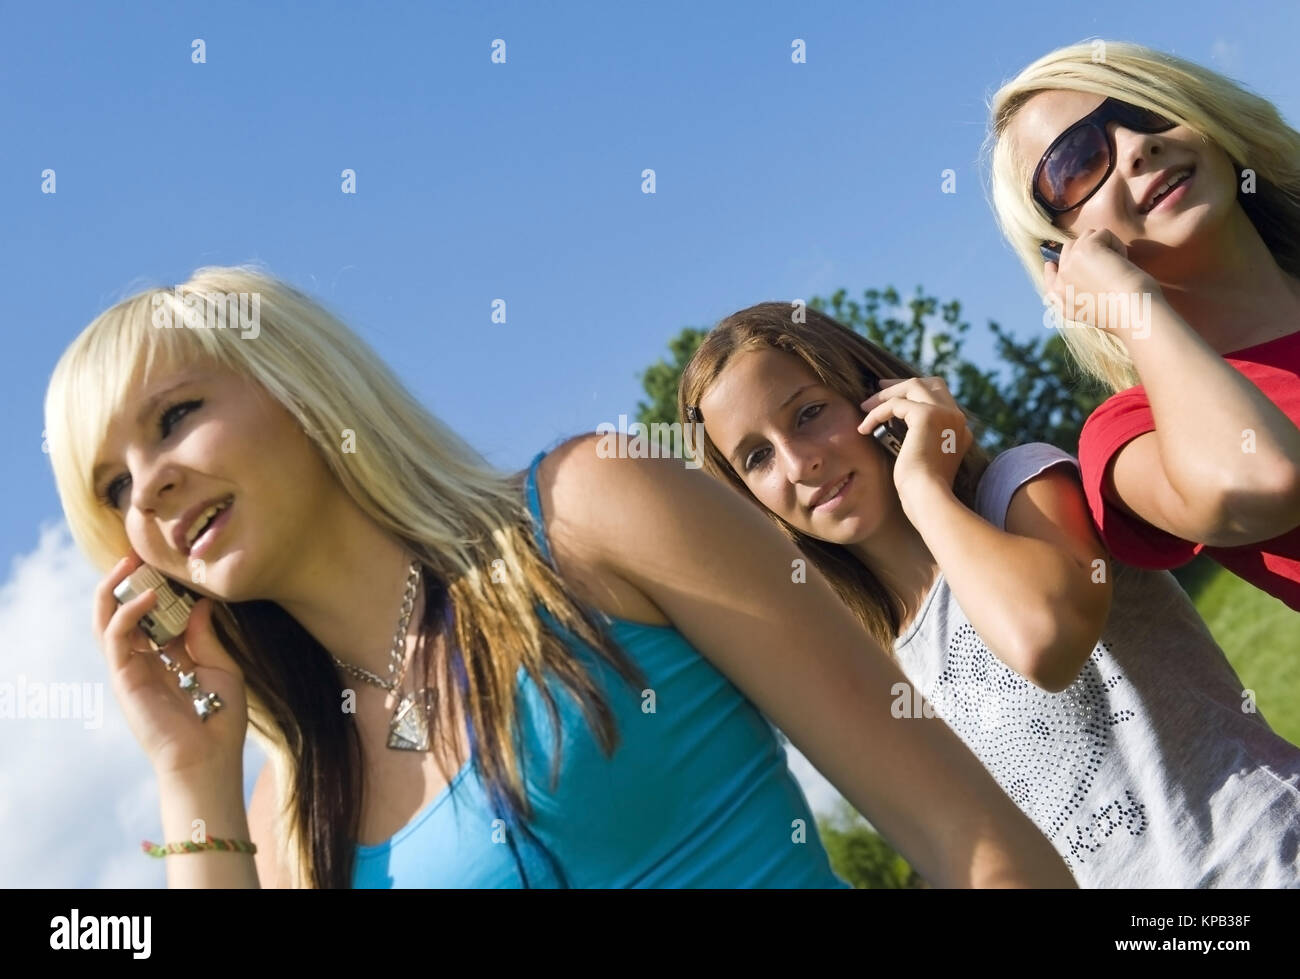 Model release, Jugendliche Maedchen telefonieren mit Handies - teenage girls using mobile phones Stock Photo